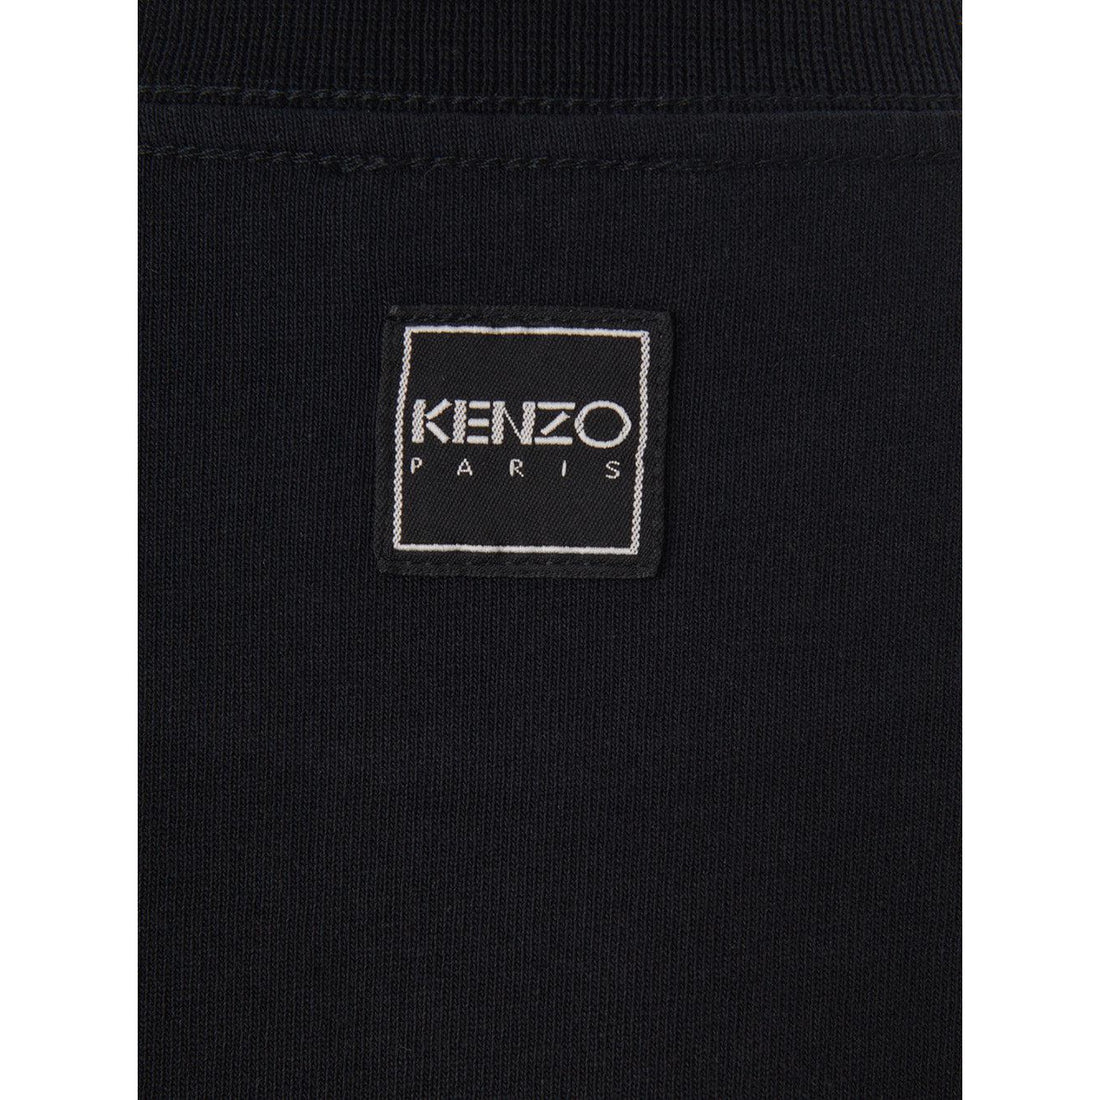 Kenzo Black Cotton  Over T-Shirt Mini Dress